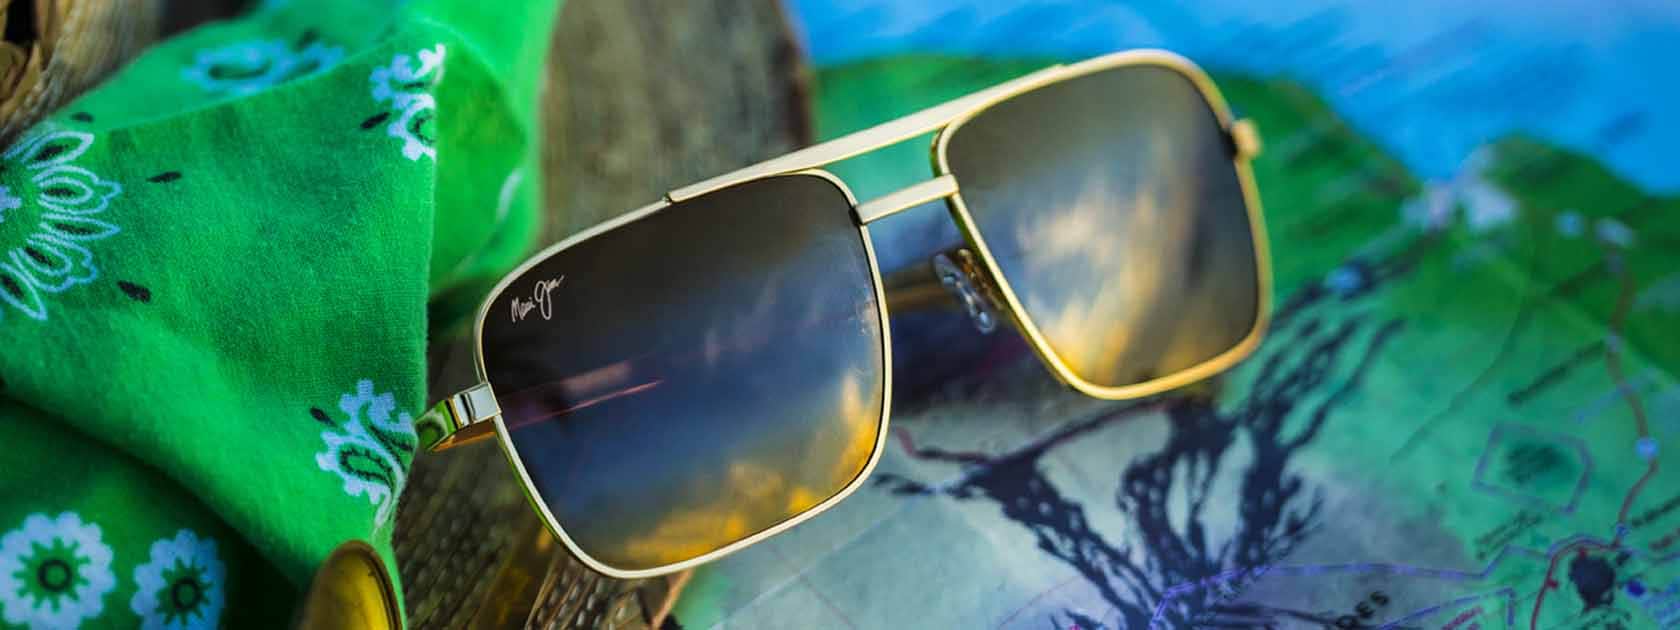 Piloten-Sonnenbrille mit goldfarbener Fassung und bronzefarbenen Gläsern vor grünem Taschentuch